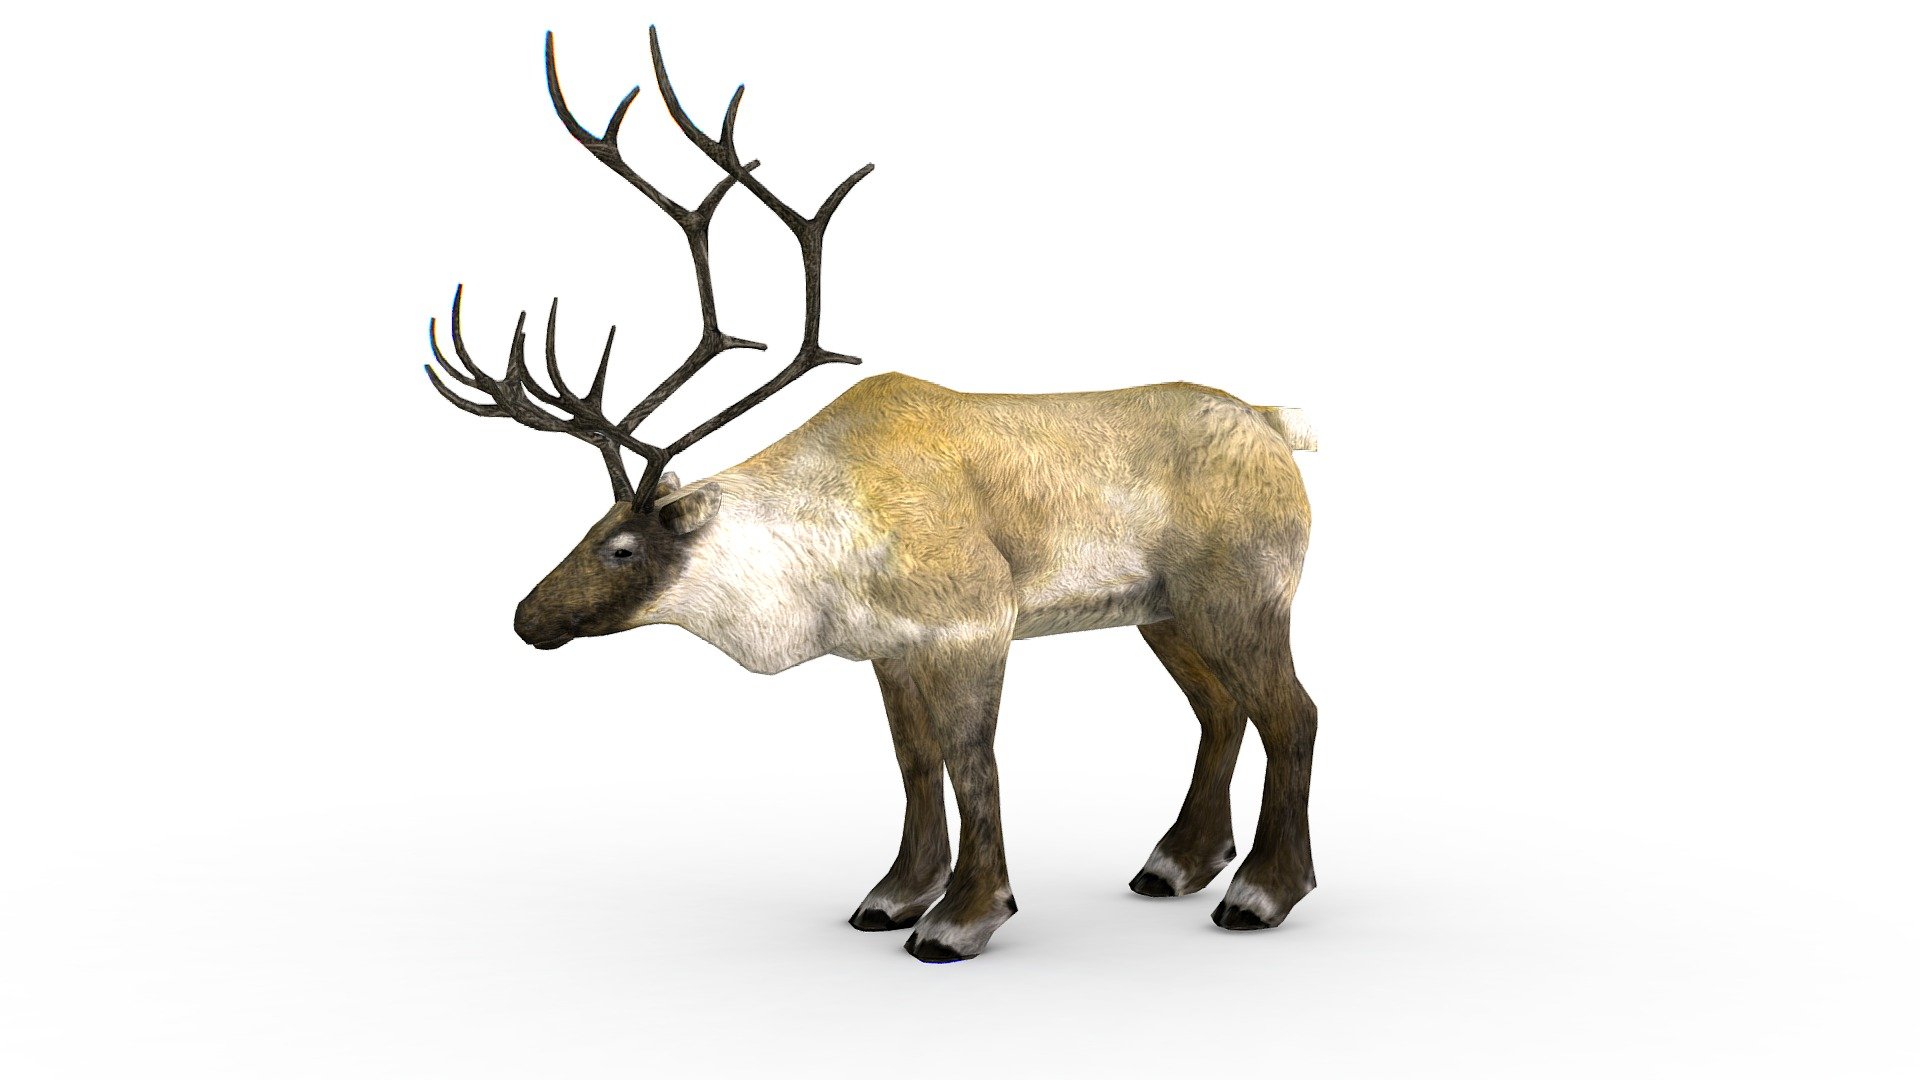 LowPoly Realistic Reindeer, 1024x1024 texture size (nirmal,difuse,specular) - LowPoly Realistic Reindeer - Buy Royalty Free 3D model by Oleg Shuldiakov (@olegshuldiakov) 3d model